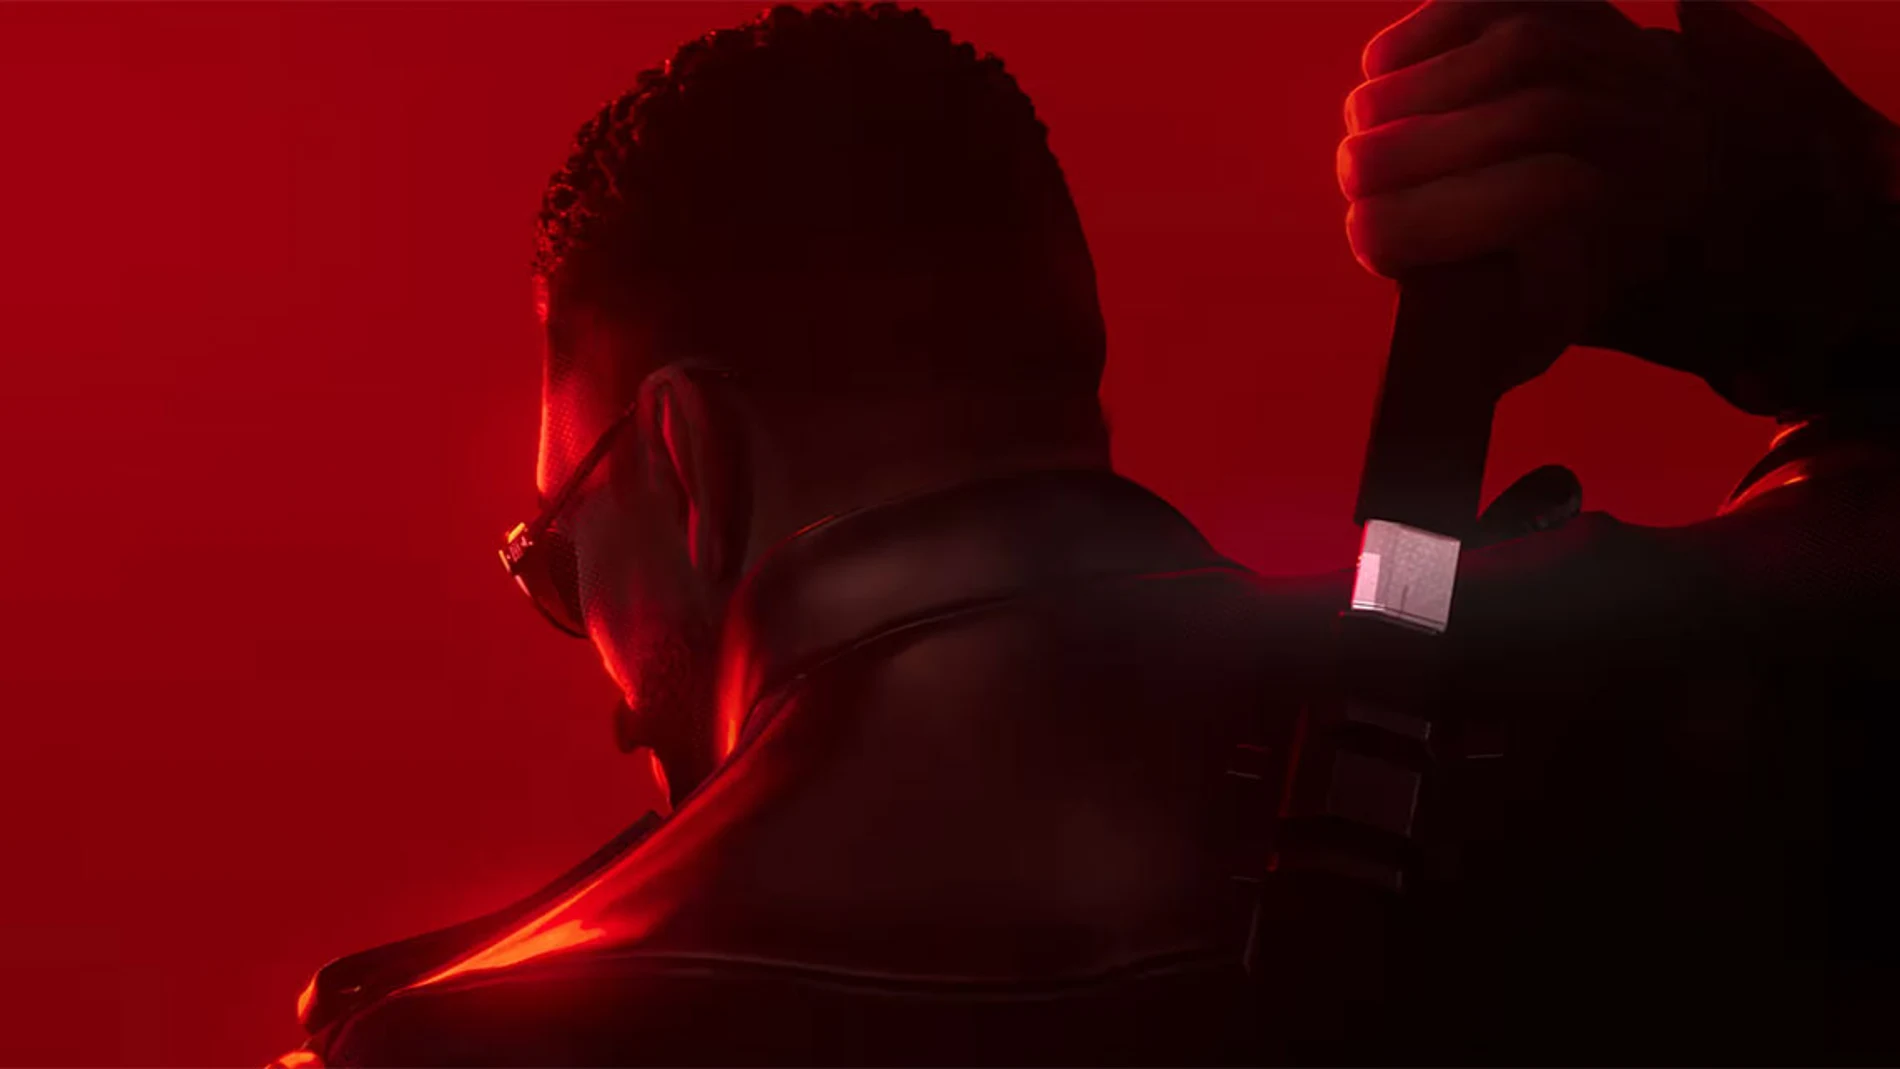 Blade: descubre el nuevo videojuego del personaje de Marvel